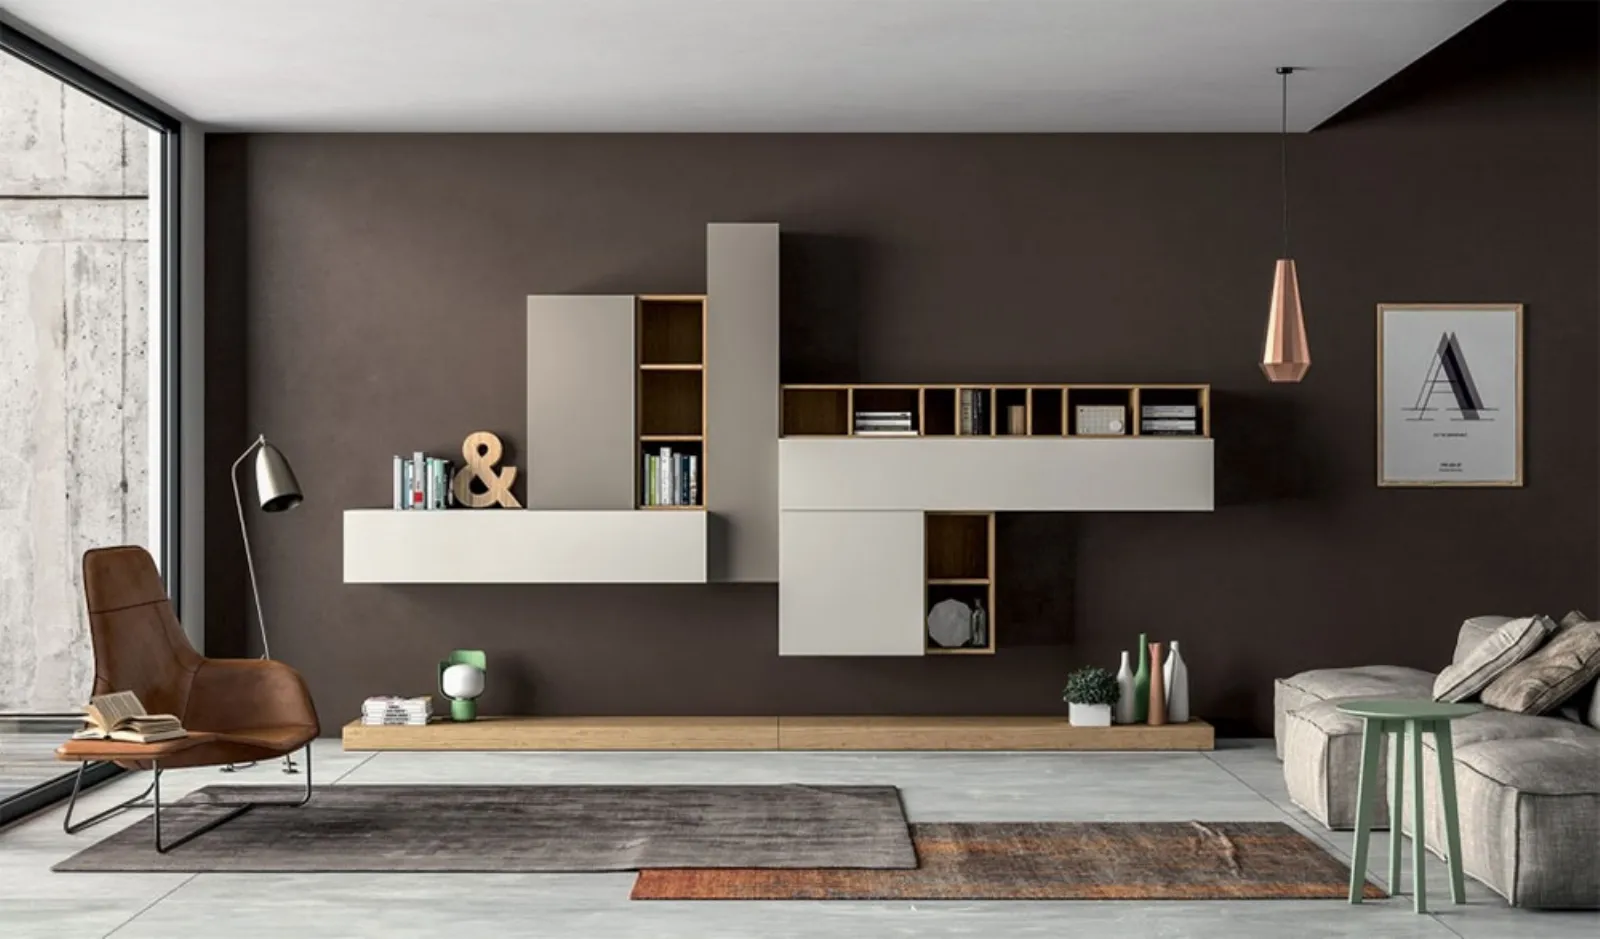 Mobili sala moderni per arredare il soggiorno mobili for Arredamenti soggiorno moderni